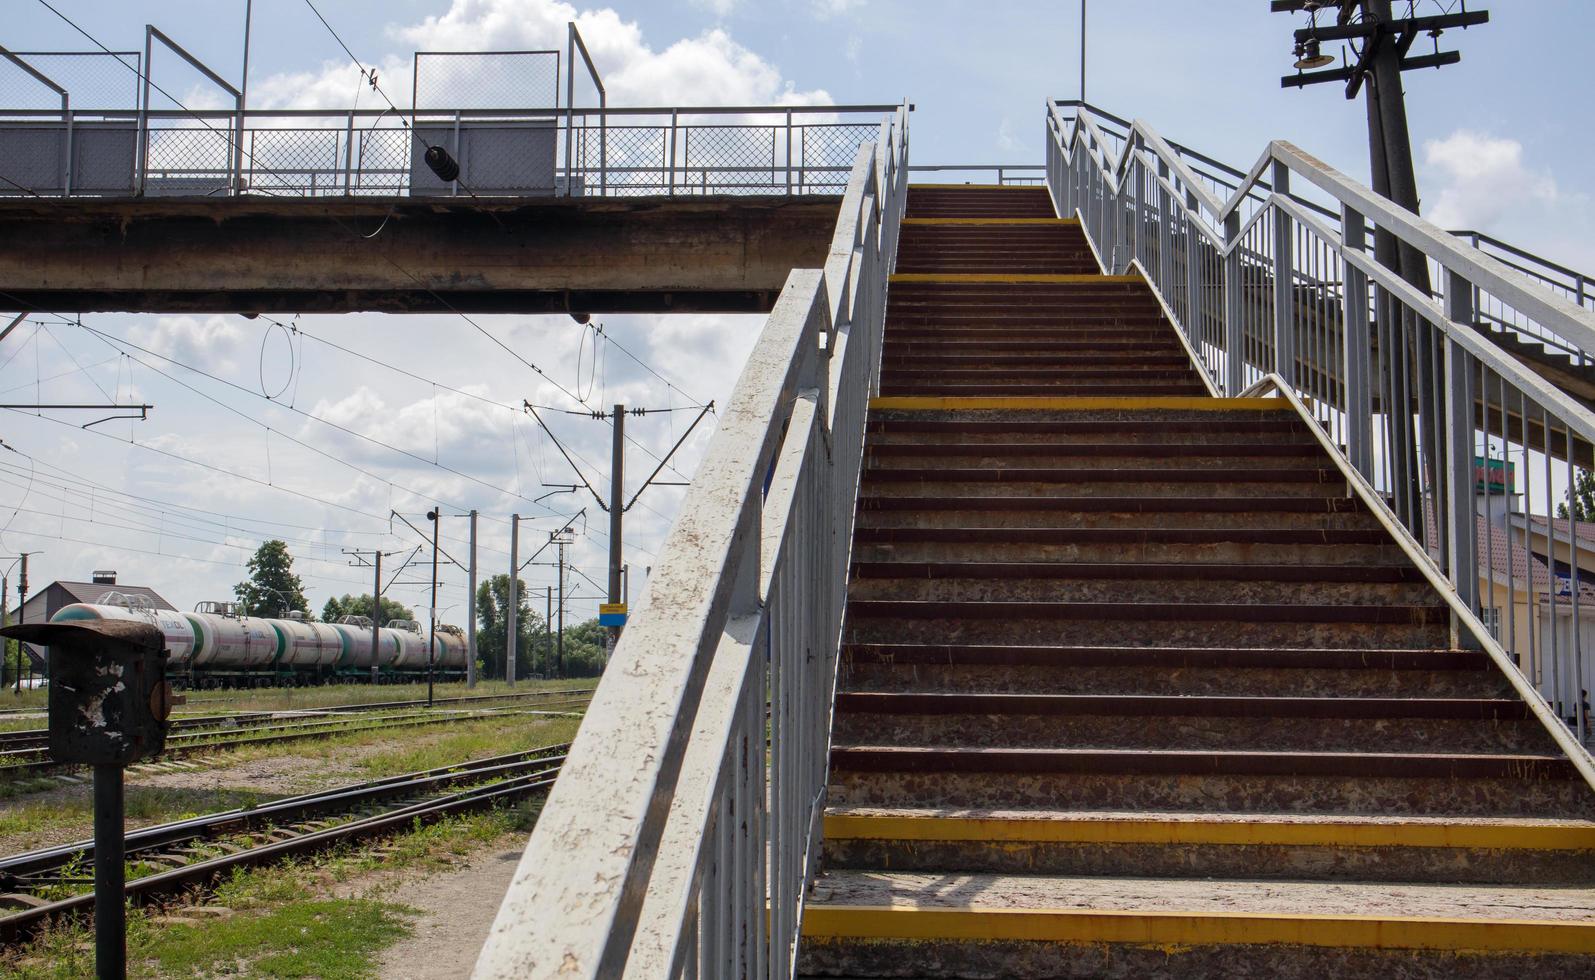 spoorbrug met treden, met indrukwekkende treden in perspectief. oversteekplaats voor voetgangers. brugtrappen die het ene platform met het andere verbinden op het treinstation. Oekraïne, Kiev - 19 augustus 2021. foto